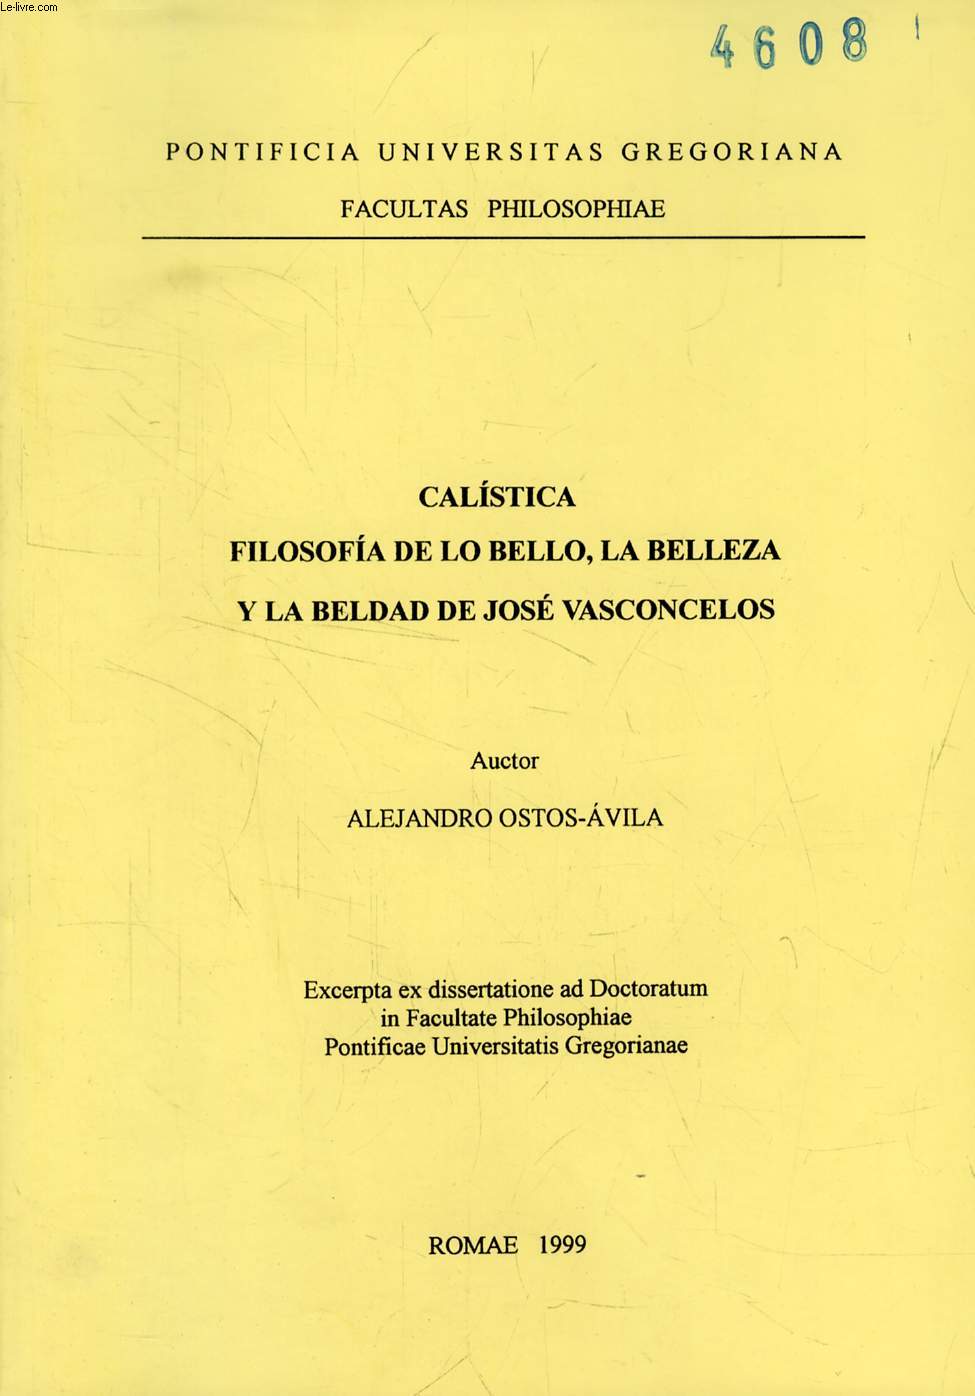 CALISTICA FILOSOFIA DE LO BELLO, LA BELLEZA Y LA BELDAD DE JOSE VASCONCELOS (EXCERPTA EX DISSERTATIONE)